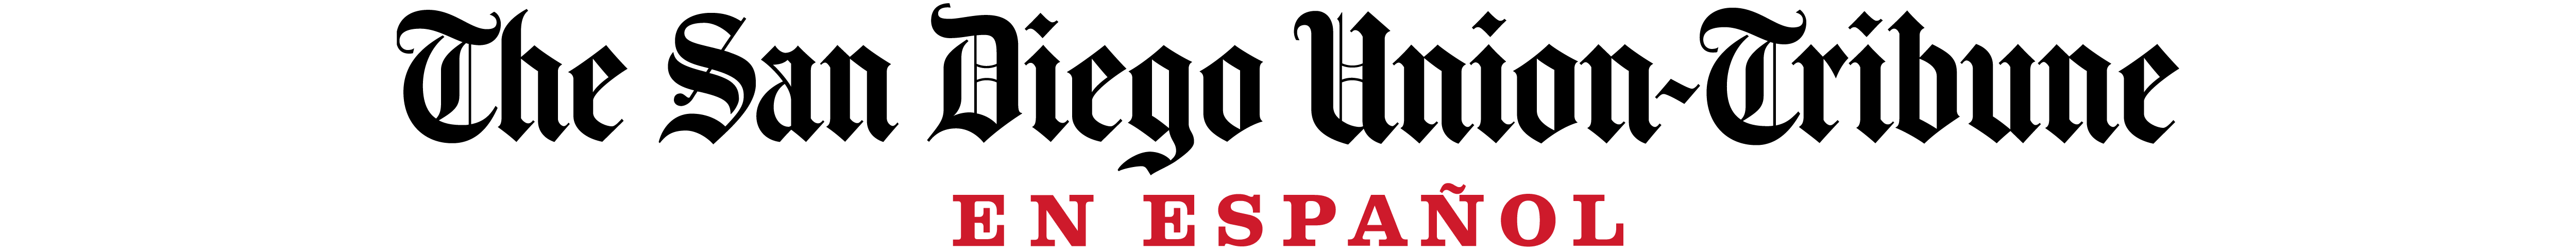 Matthew Perry murió por los efectos de la ketamina, según la autopsia - San  Diego Union-Tribune en Español